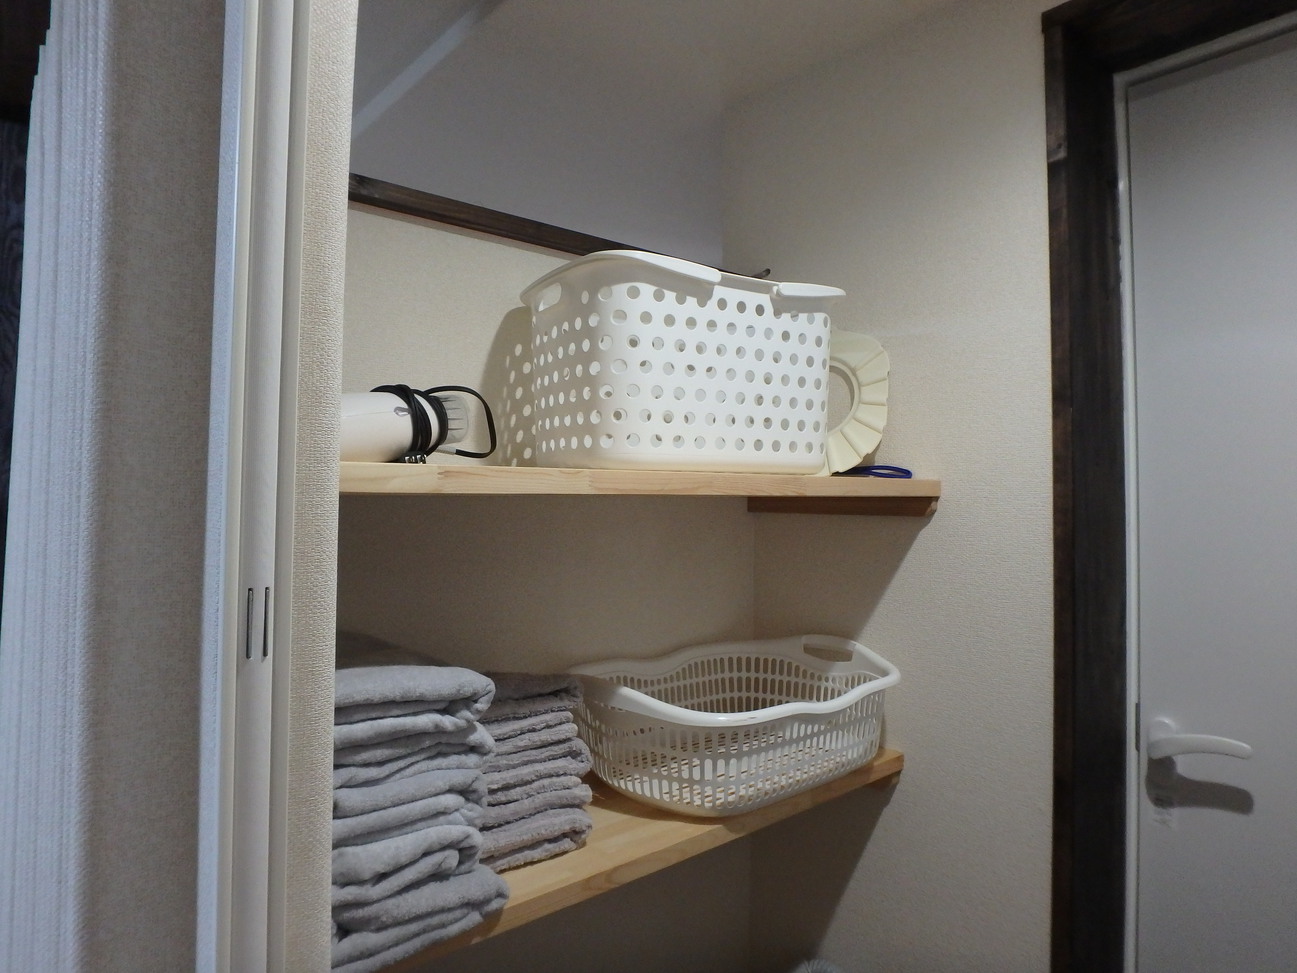 京の宿西大路familie 客室内更衣室バスタオルとフェイスタオルとドライヤーです。